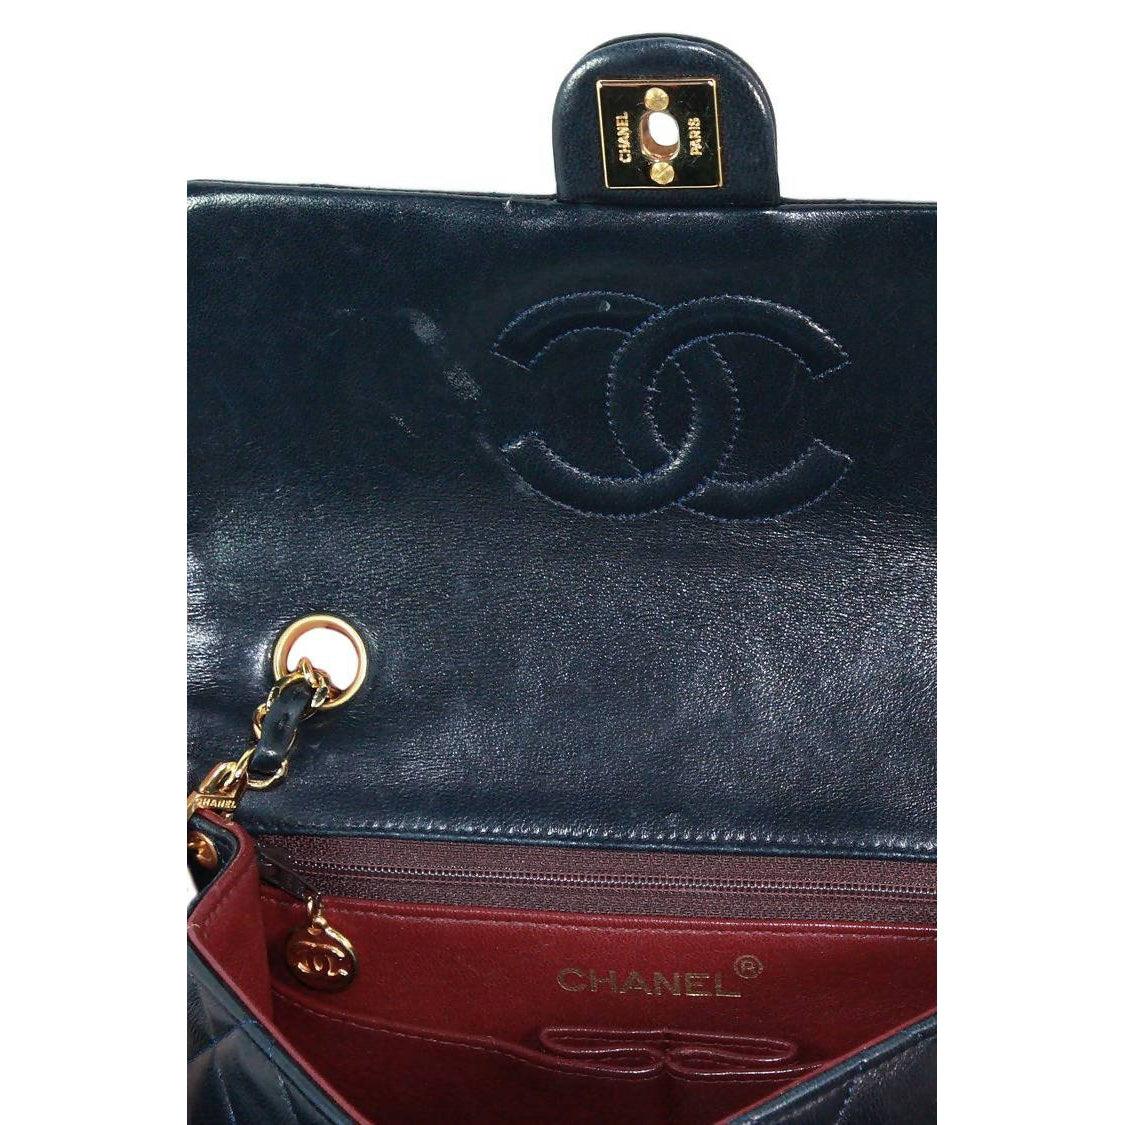 Preowned Chanel medium velvet boy bag